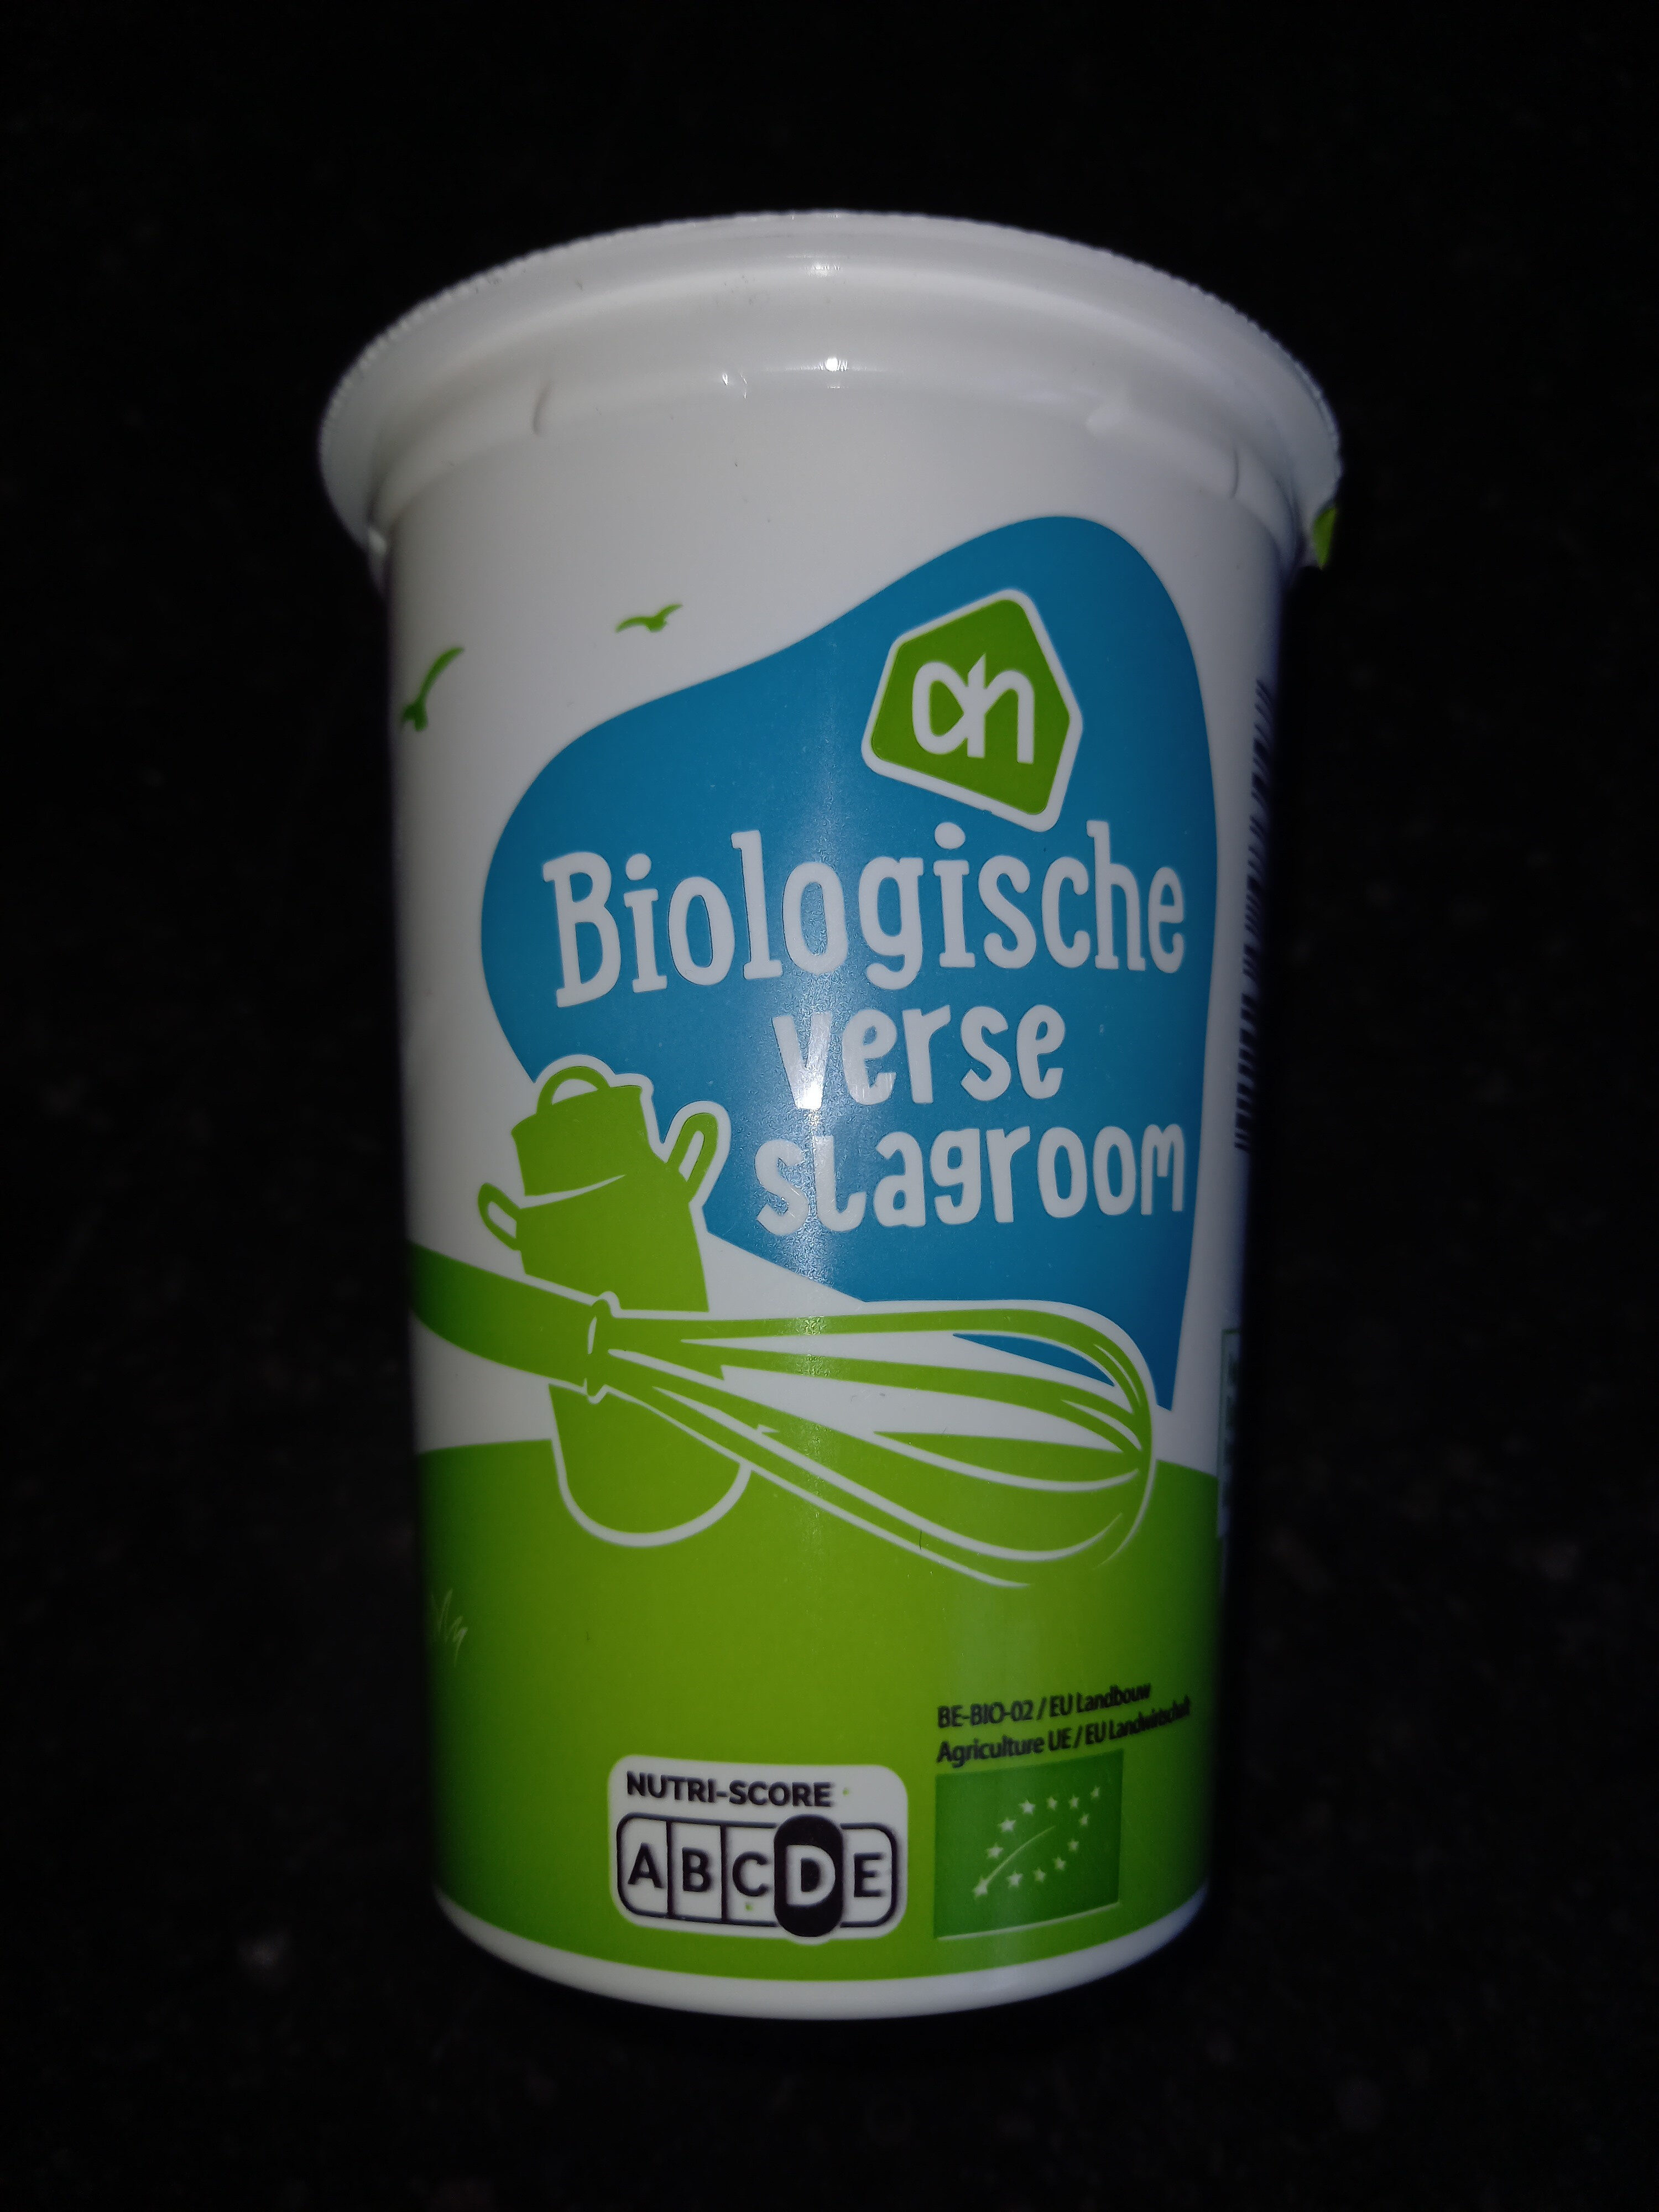 Biologische verse slagroom - Product